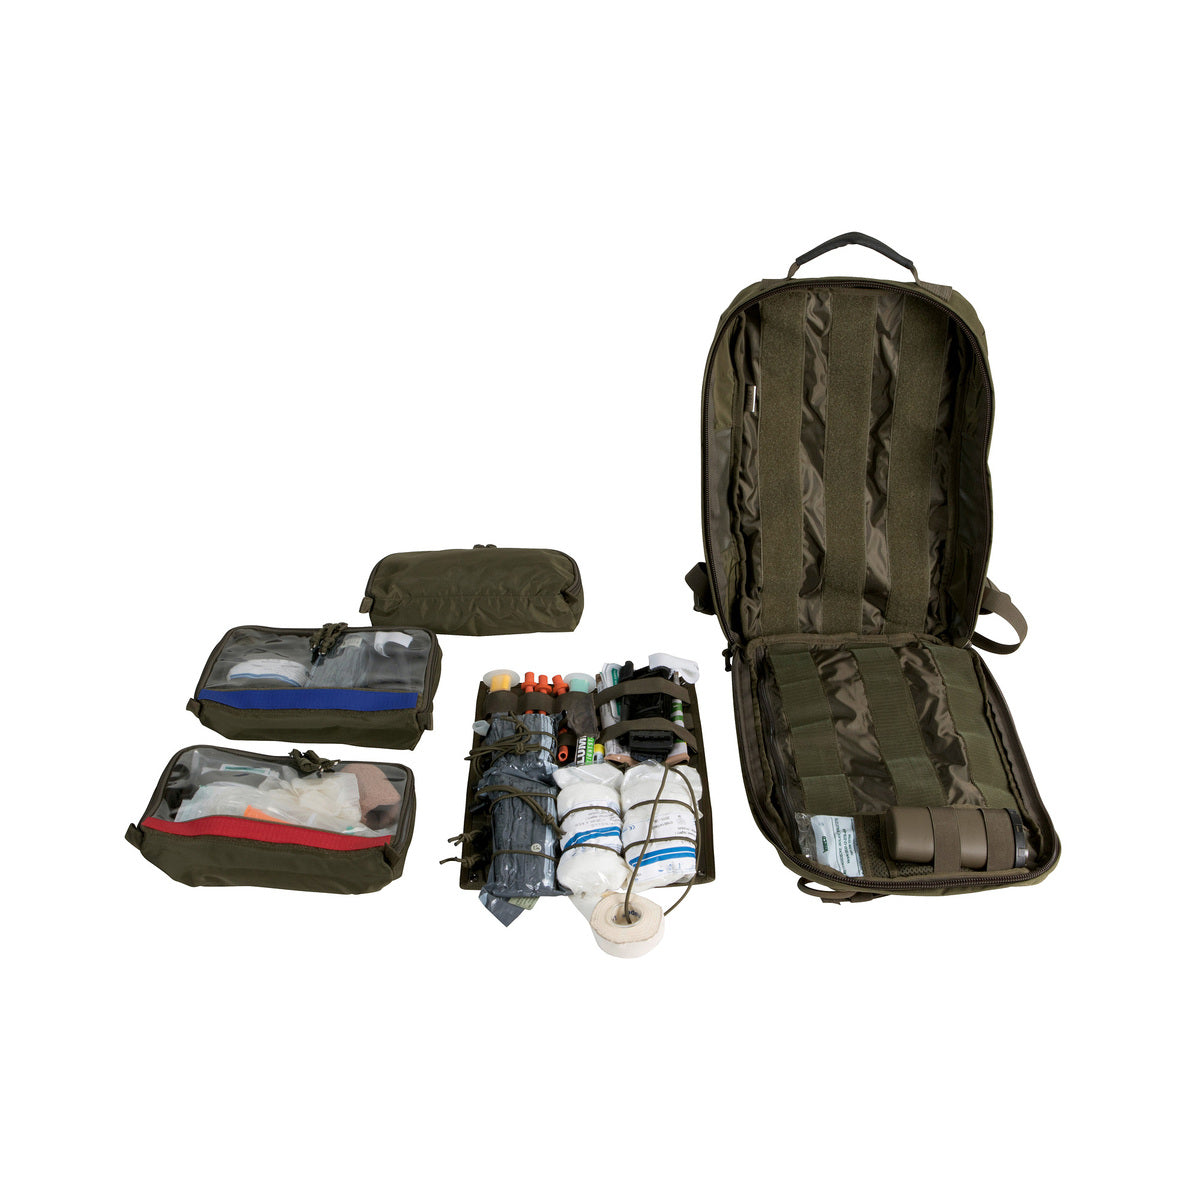 Tasmanian Tiger Medic Assault MKII Pack Olive Tactical Gear Australia Supplier Distributor Dealer